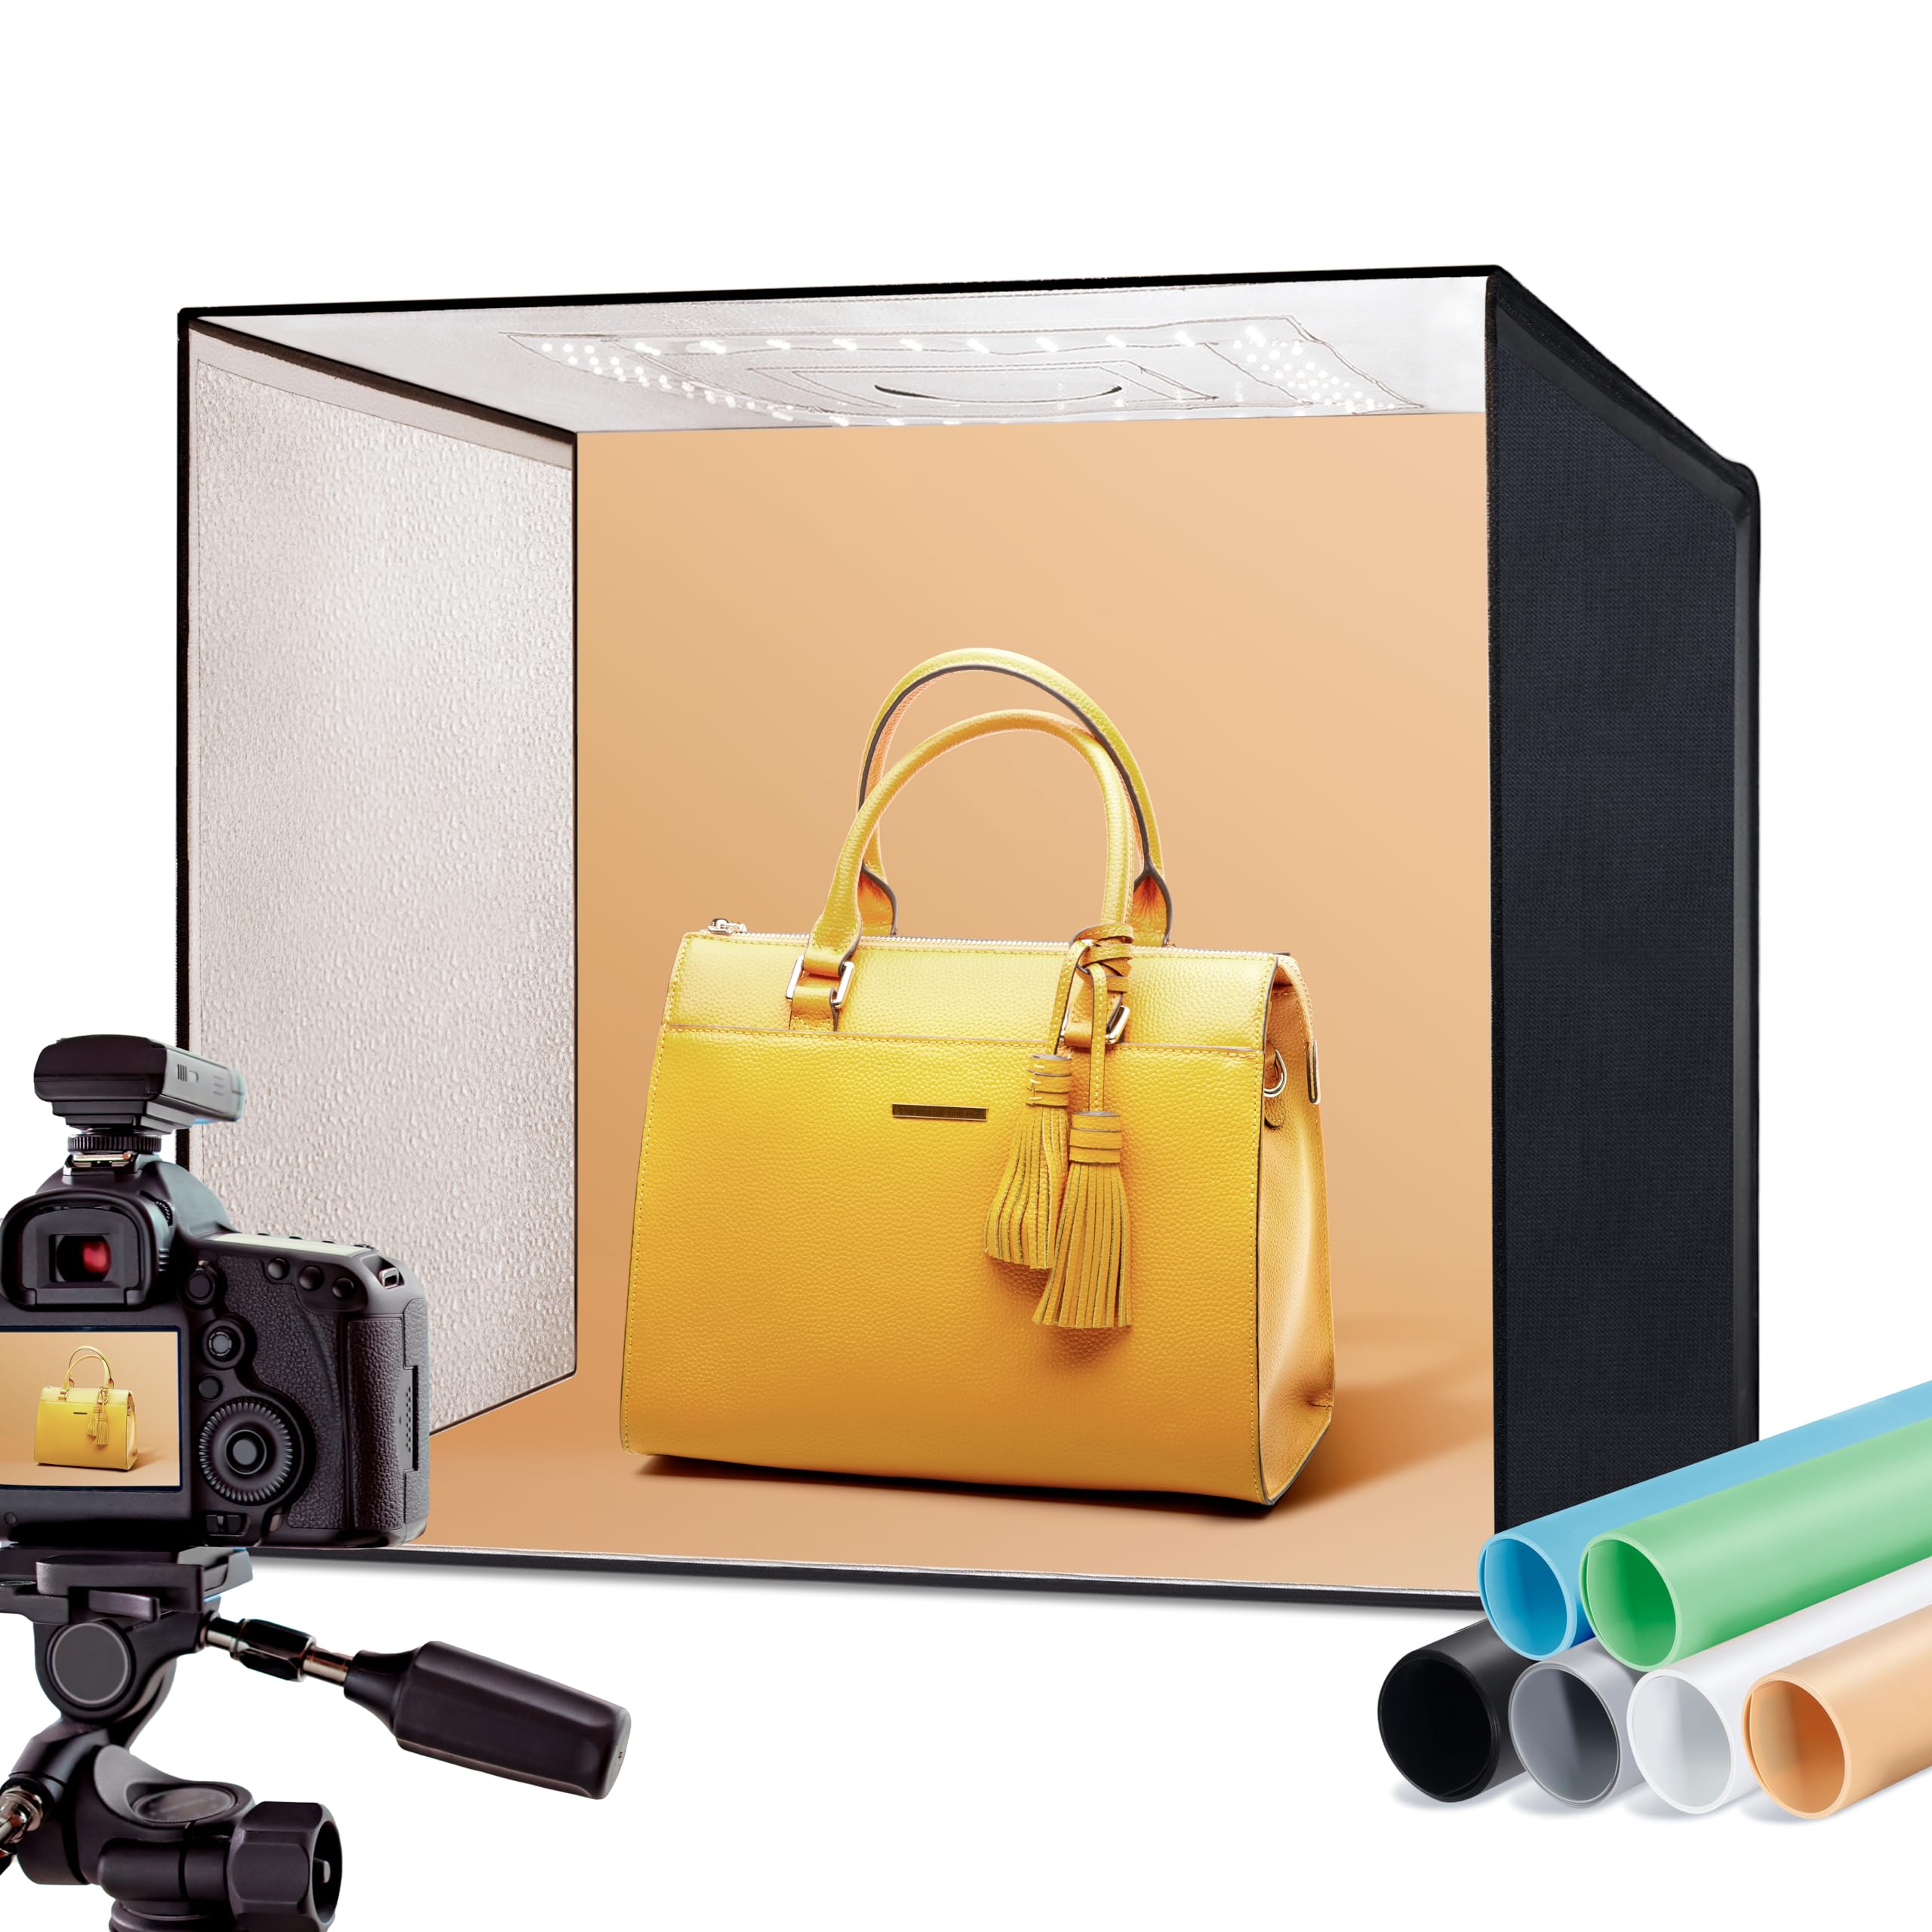 RALENO® Fotostudio Set 50 x 50 x 50 cm professionelle superhelle Fotobox mit 50 W / 5500 K / 92 CRI einstellbarem Licht inkl.6 PVC-Hintergrund(schwarz/grau/orange/weiß/blau/grün)